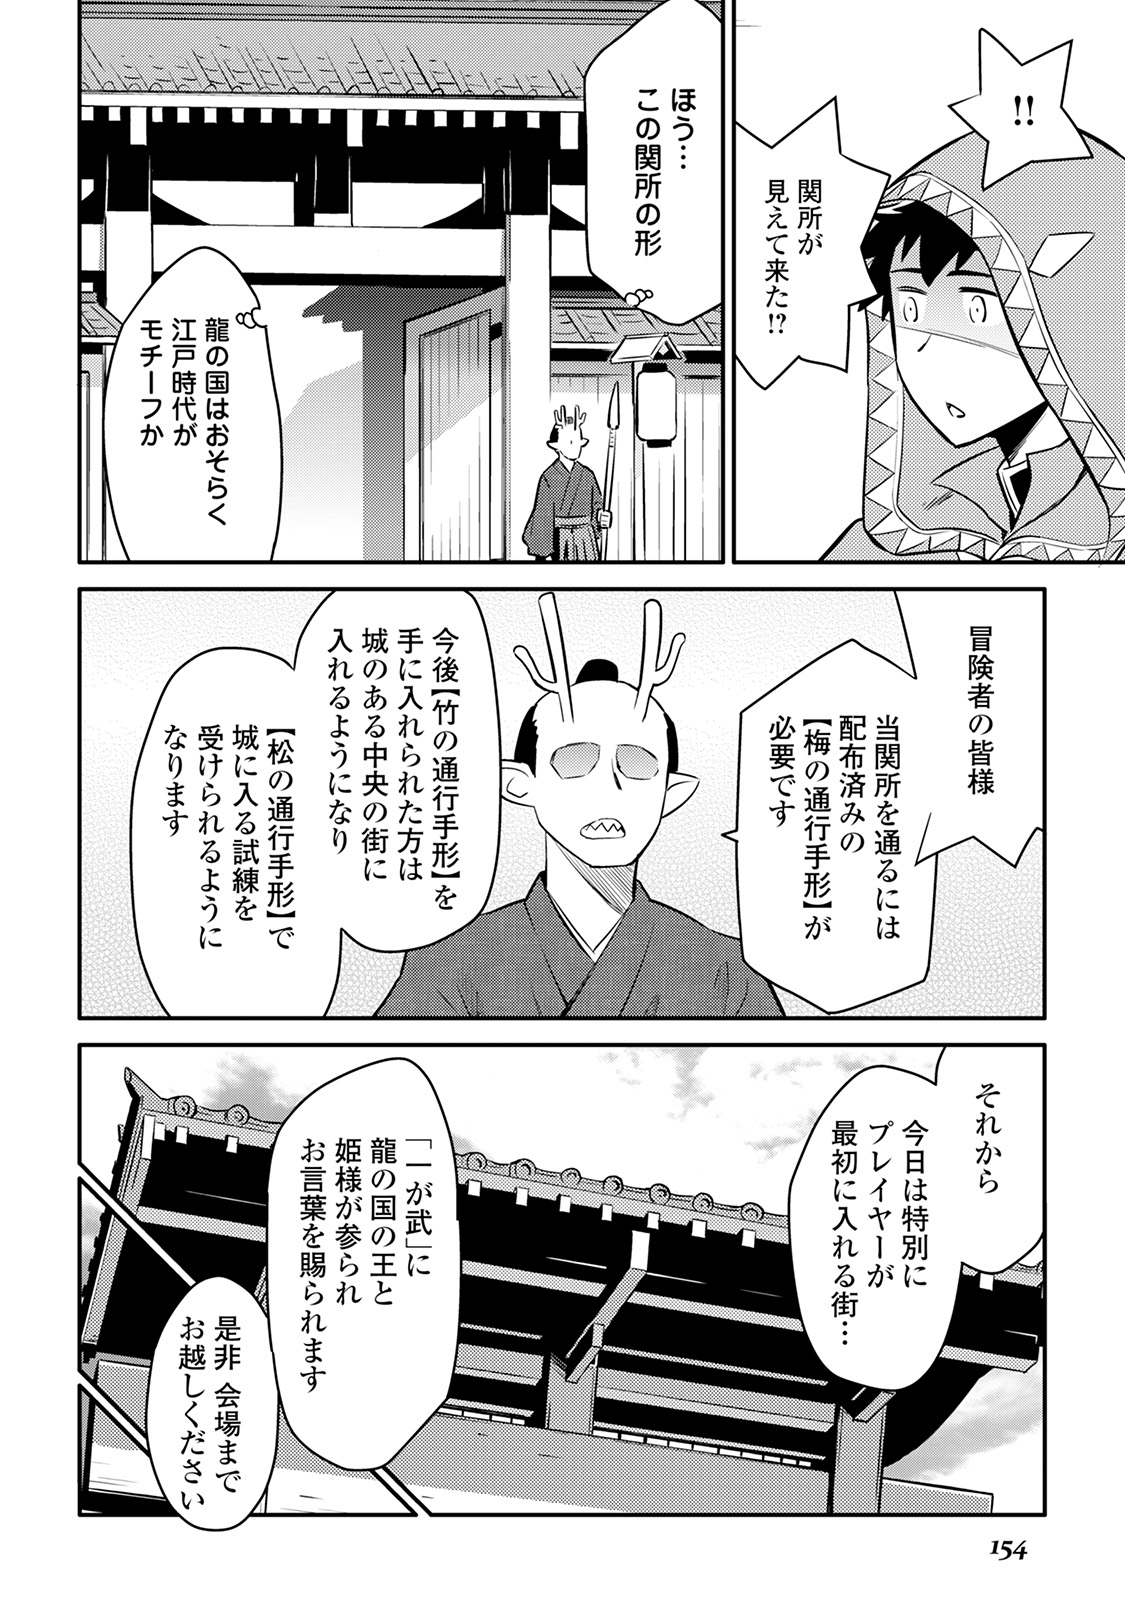 Toaru Ossan no VRMMO Katsudouki - Chapter 35 - Page 2